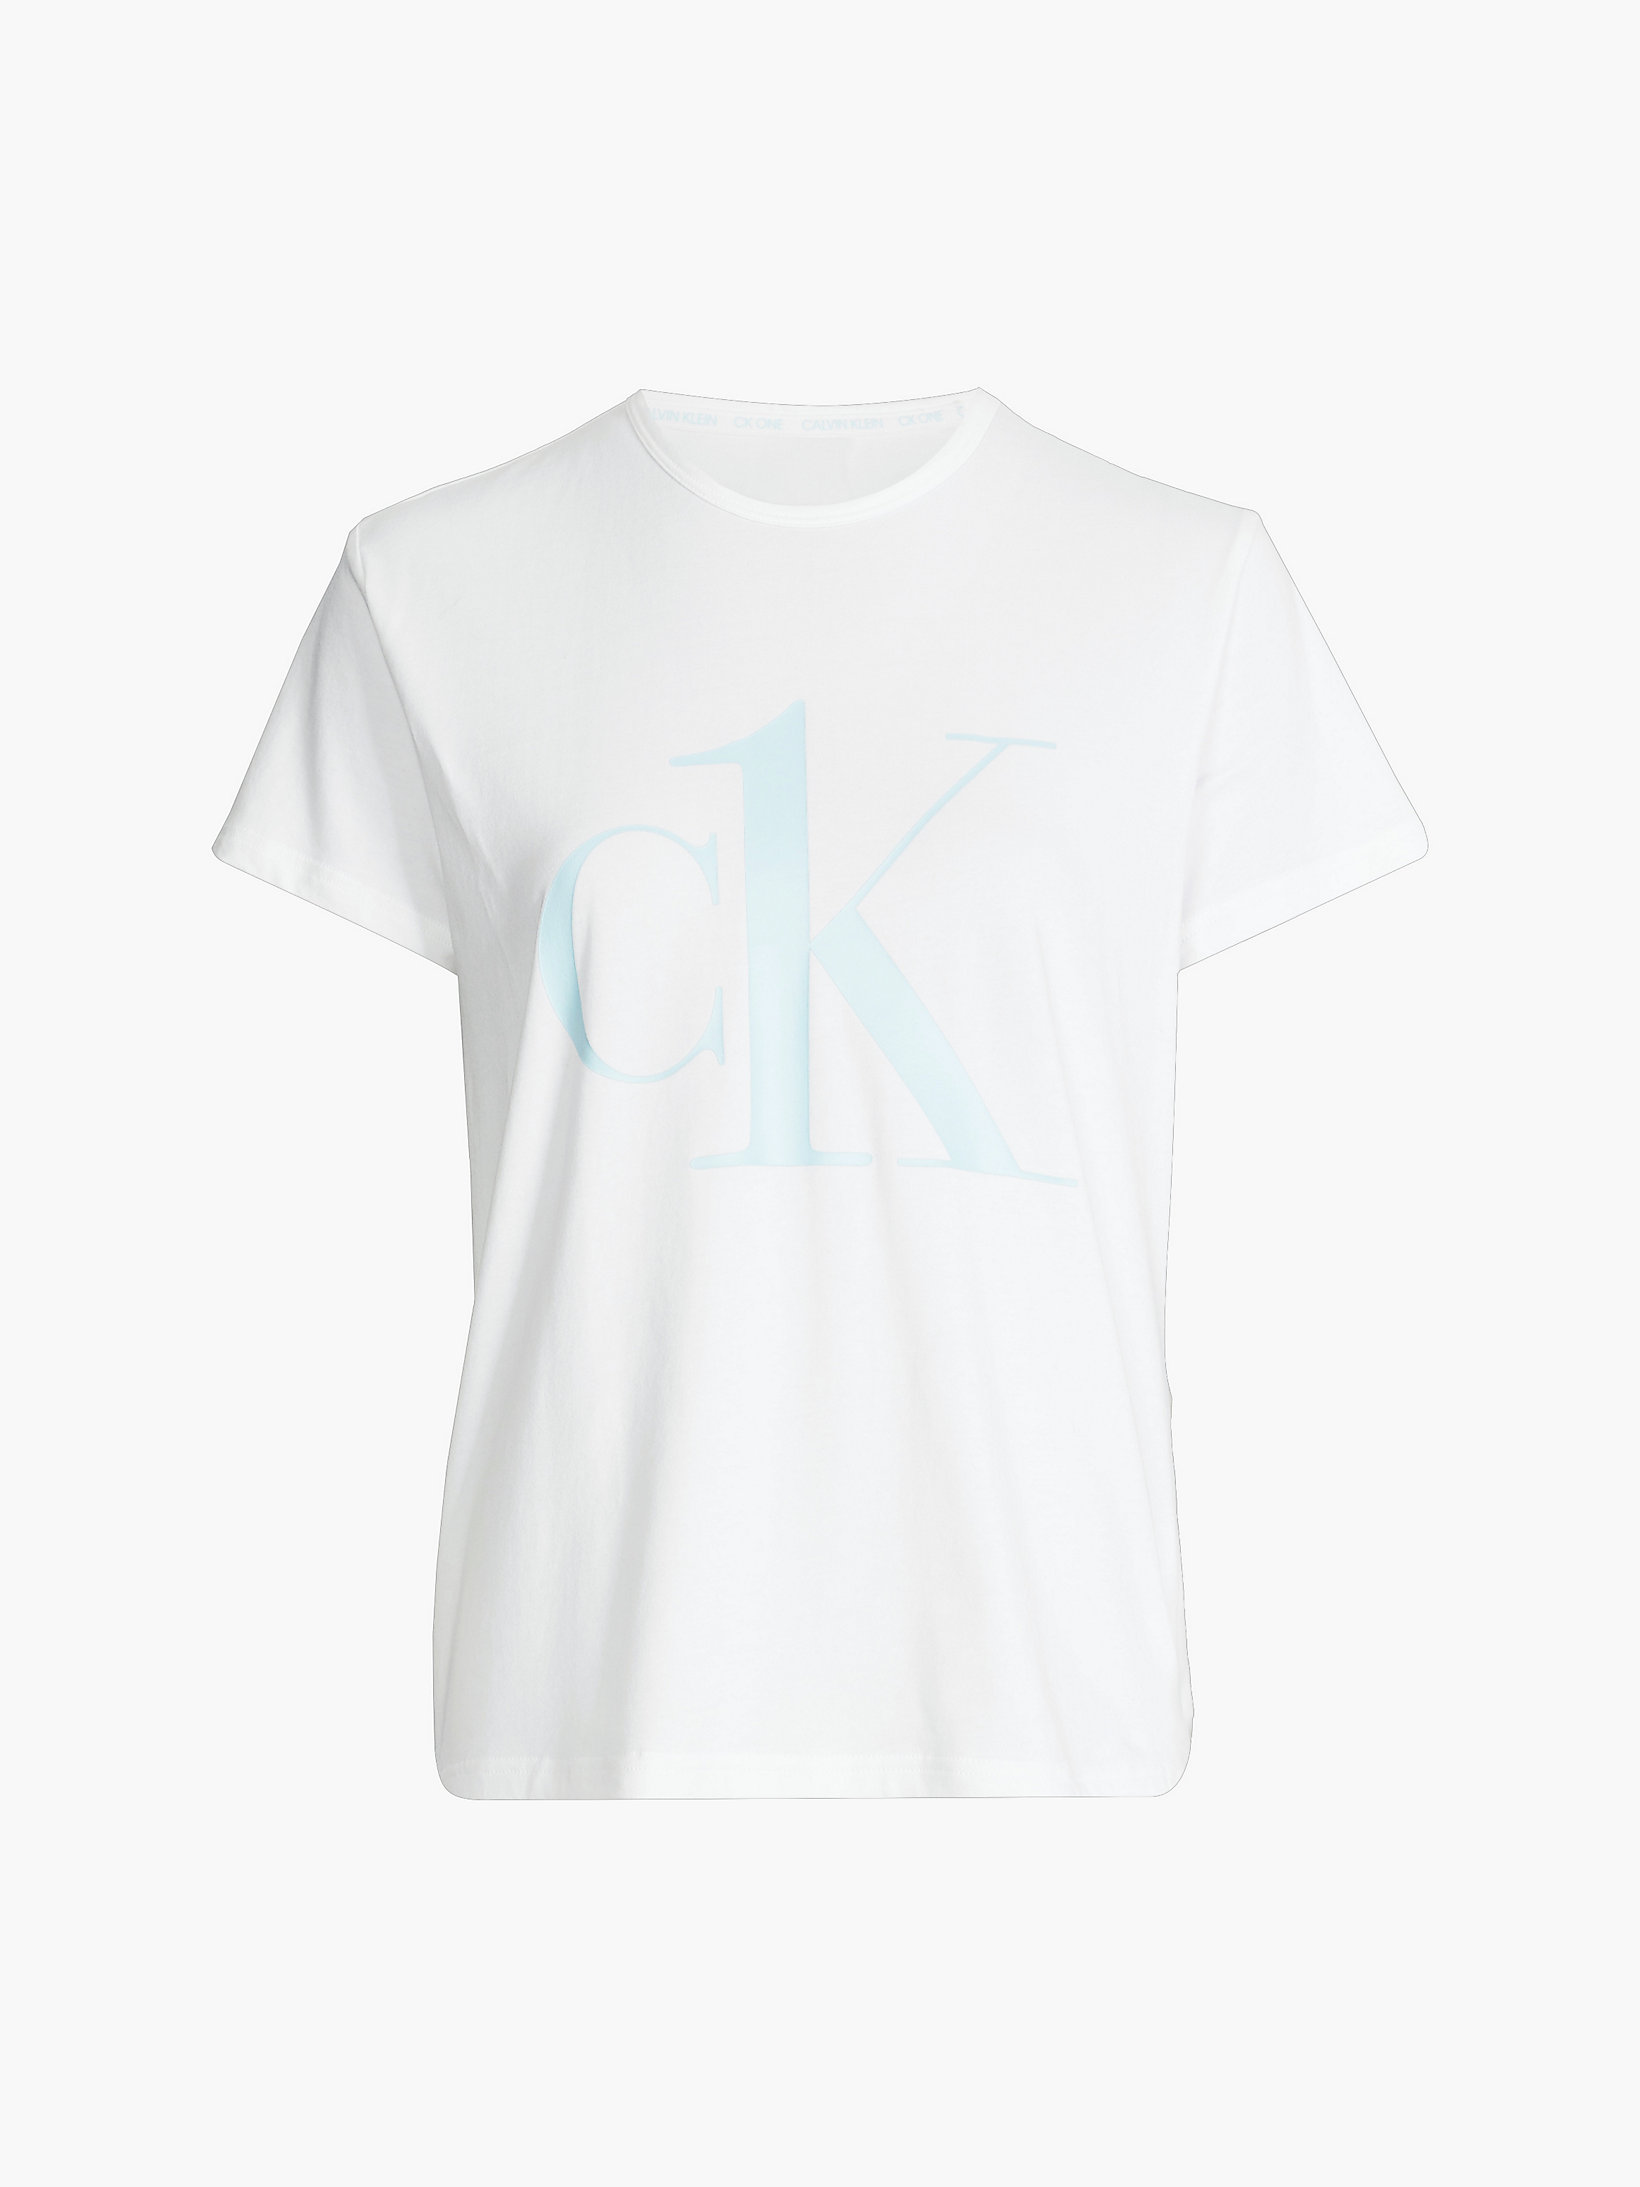 Camiseta De Pijama - CK One > White W/ Palest Blue Logo > undefined mujer > Calvin Klein